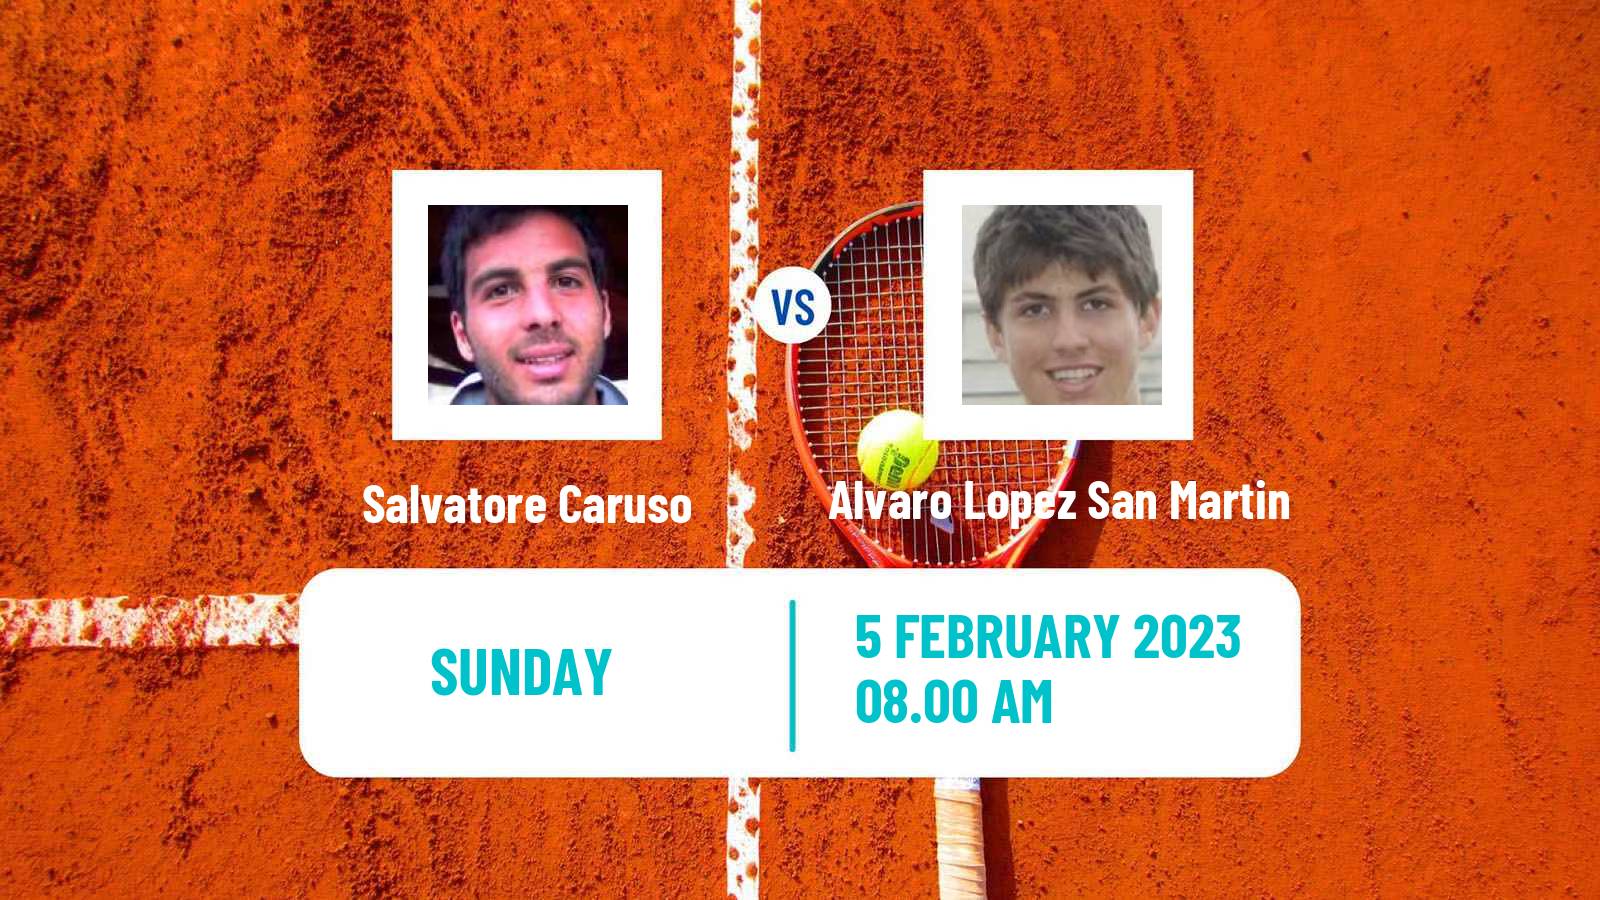 Tennis ATP Challenger Salvatore Caruso - Alvaro Lopez San Martin